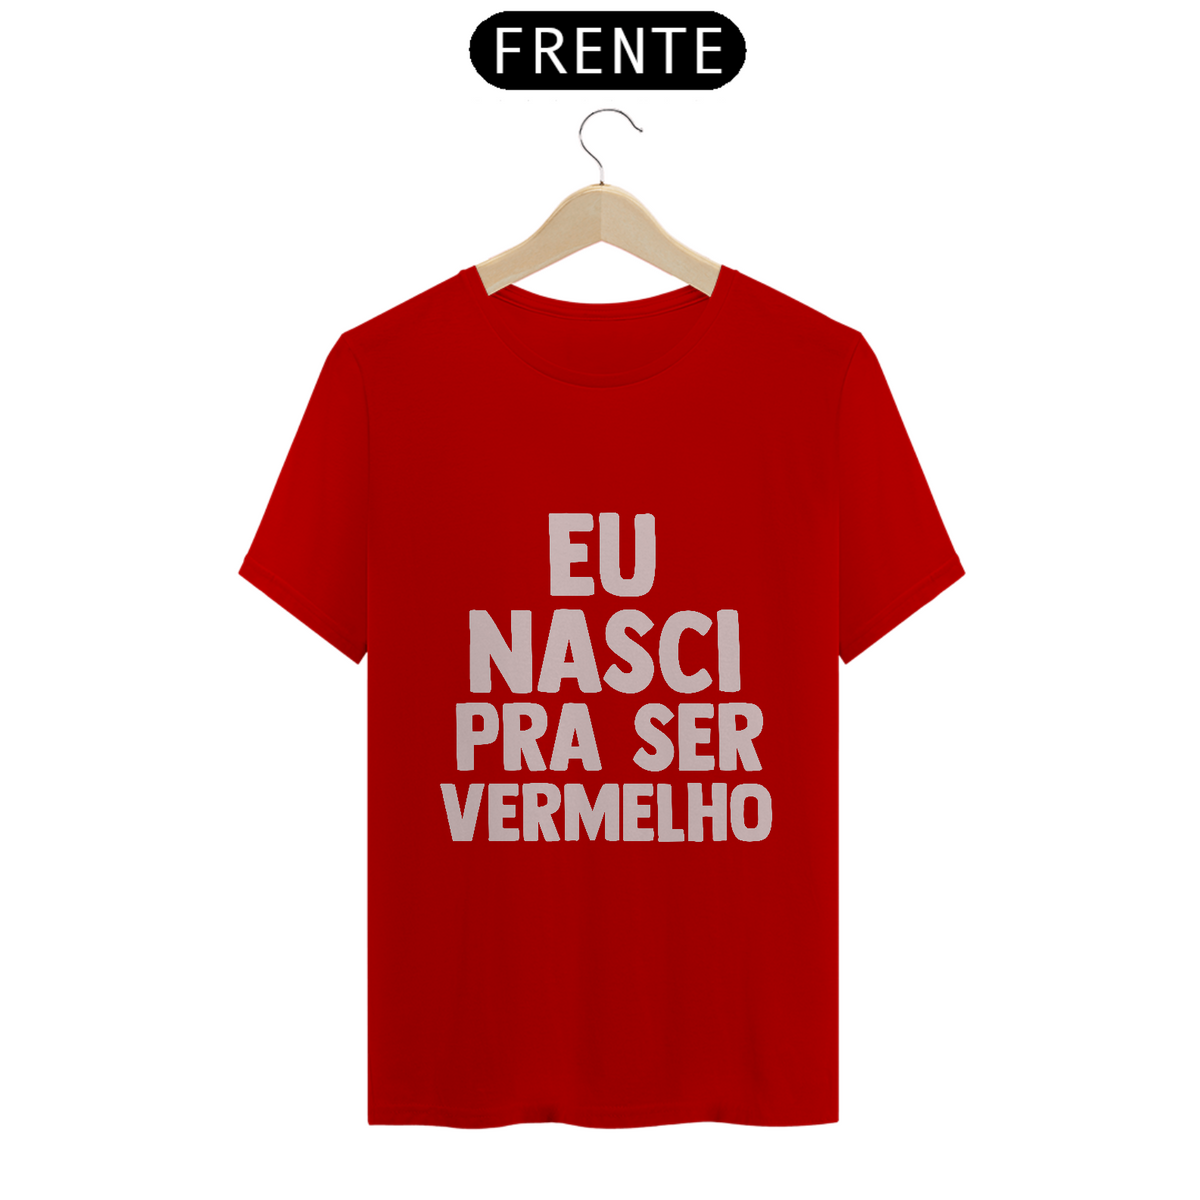 Nome do produto: Camiseta Nasci pra ser vermelho